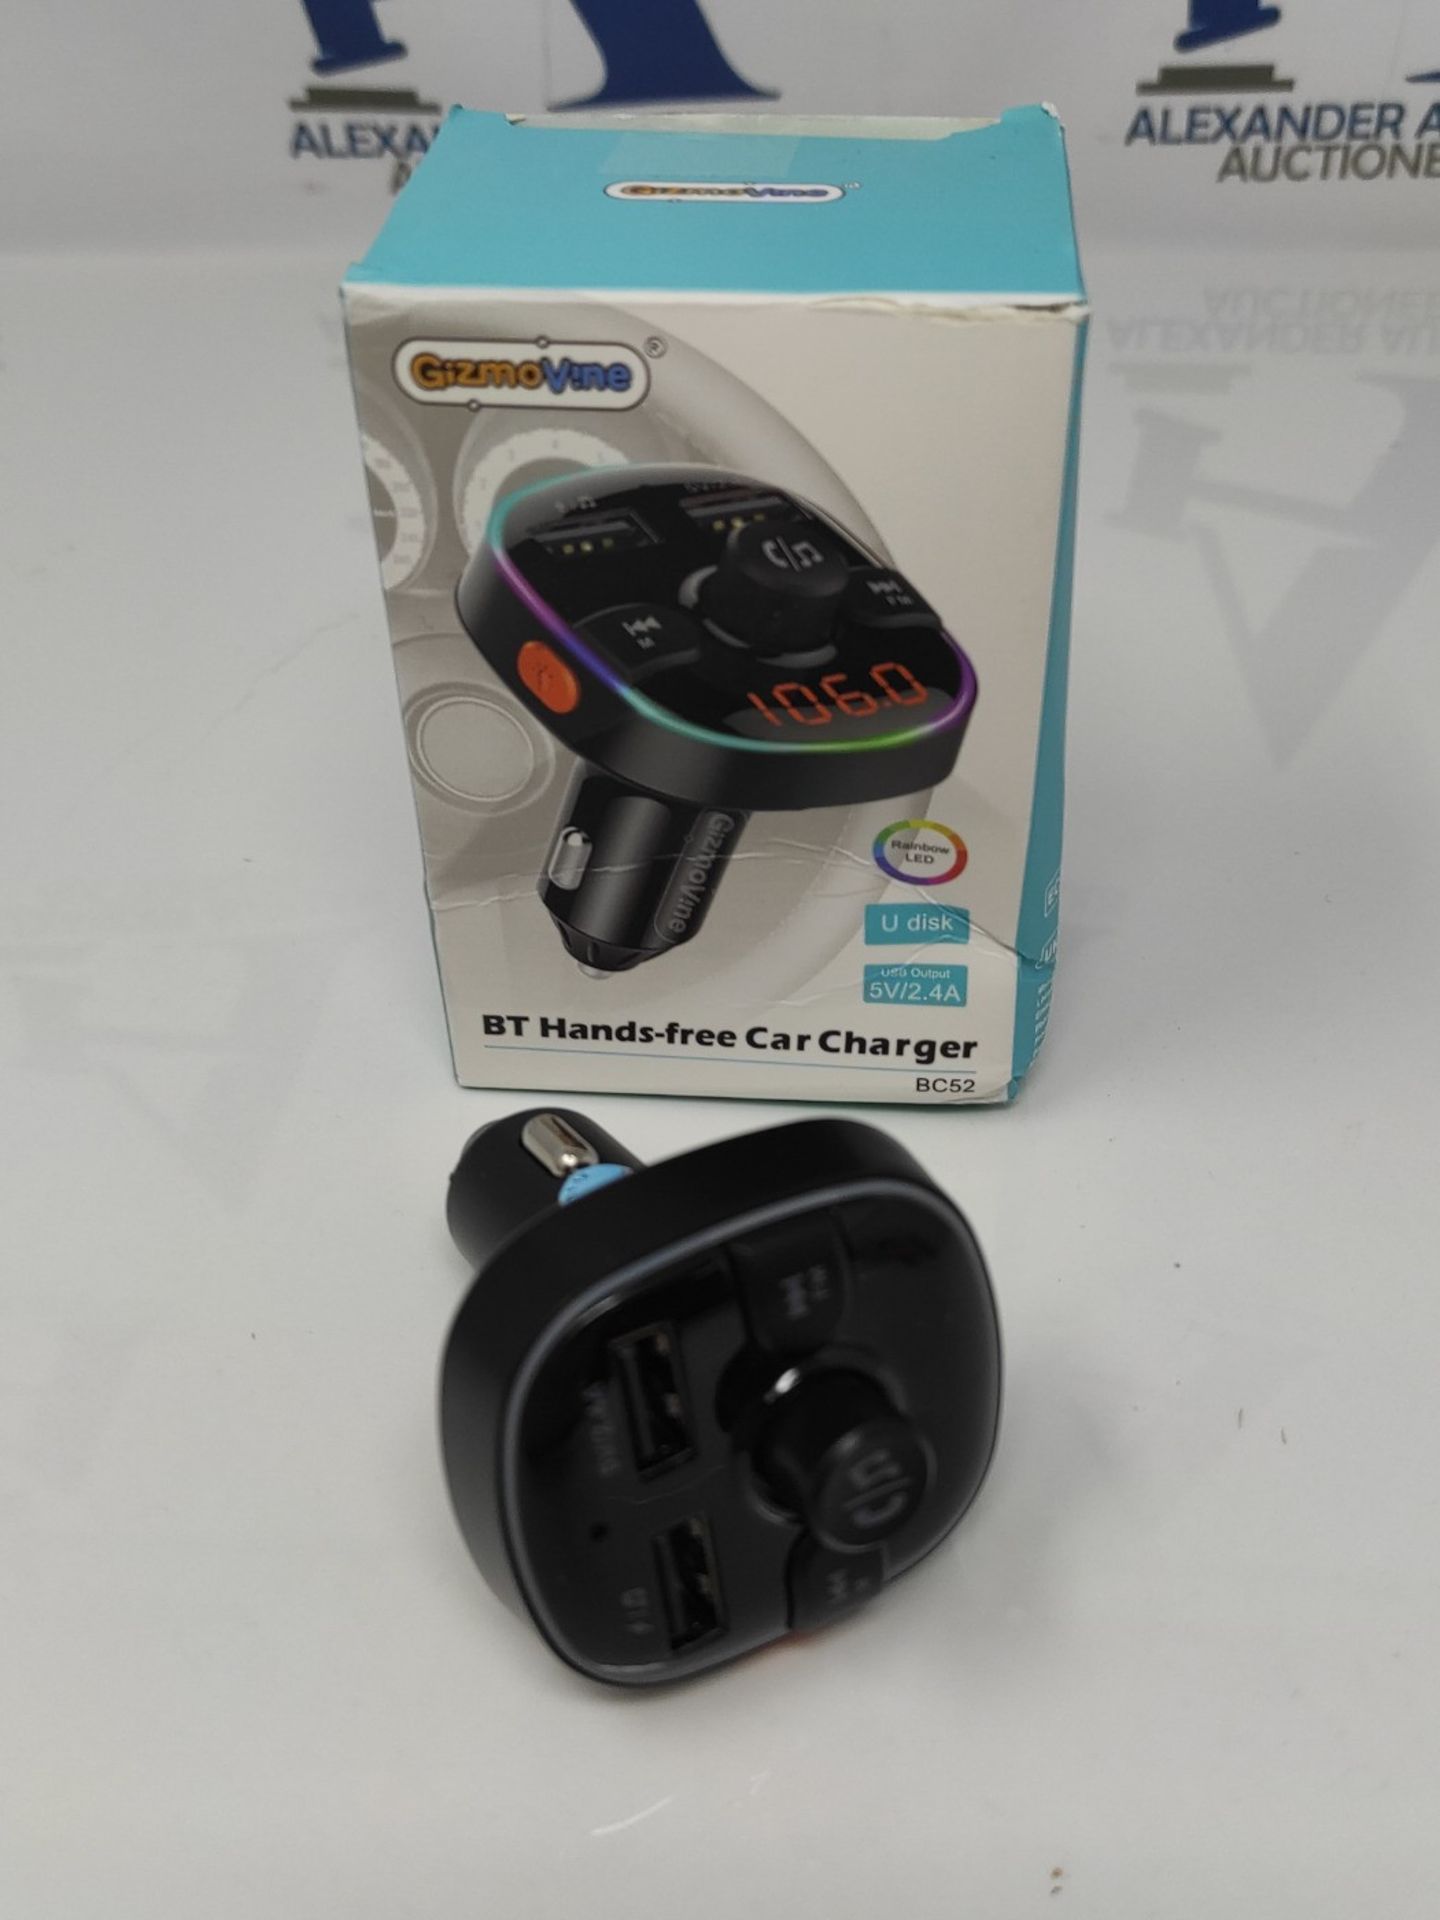 Bluetooth FM Transmitter for Car, Cigarette Lighter Adapter, 2 USB Ports 5V/2.4A, Jack - Image 2 of 3